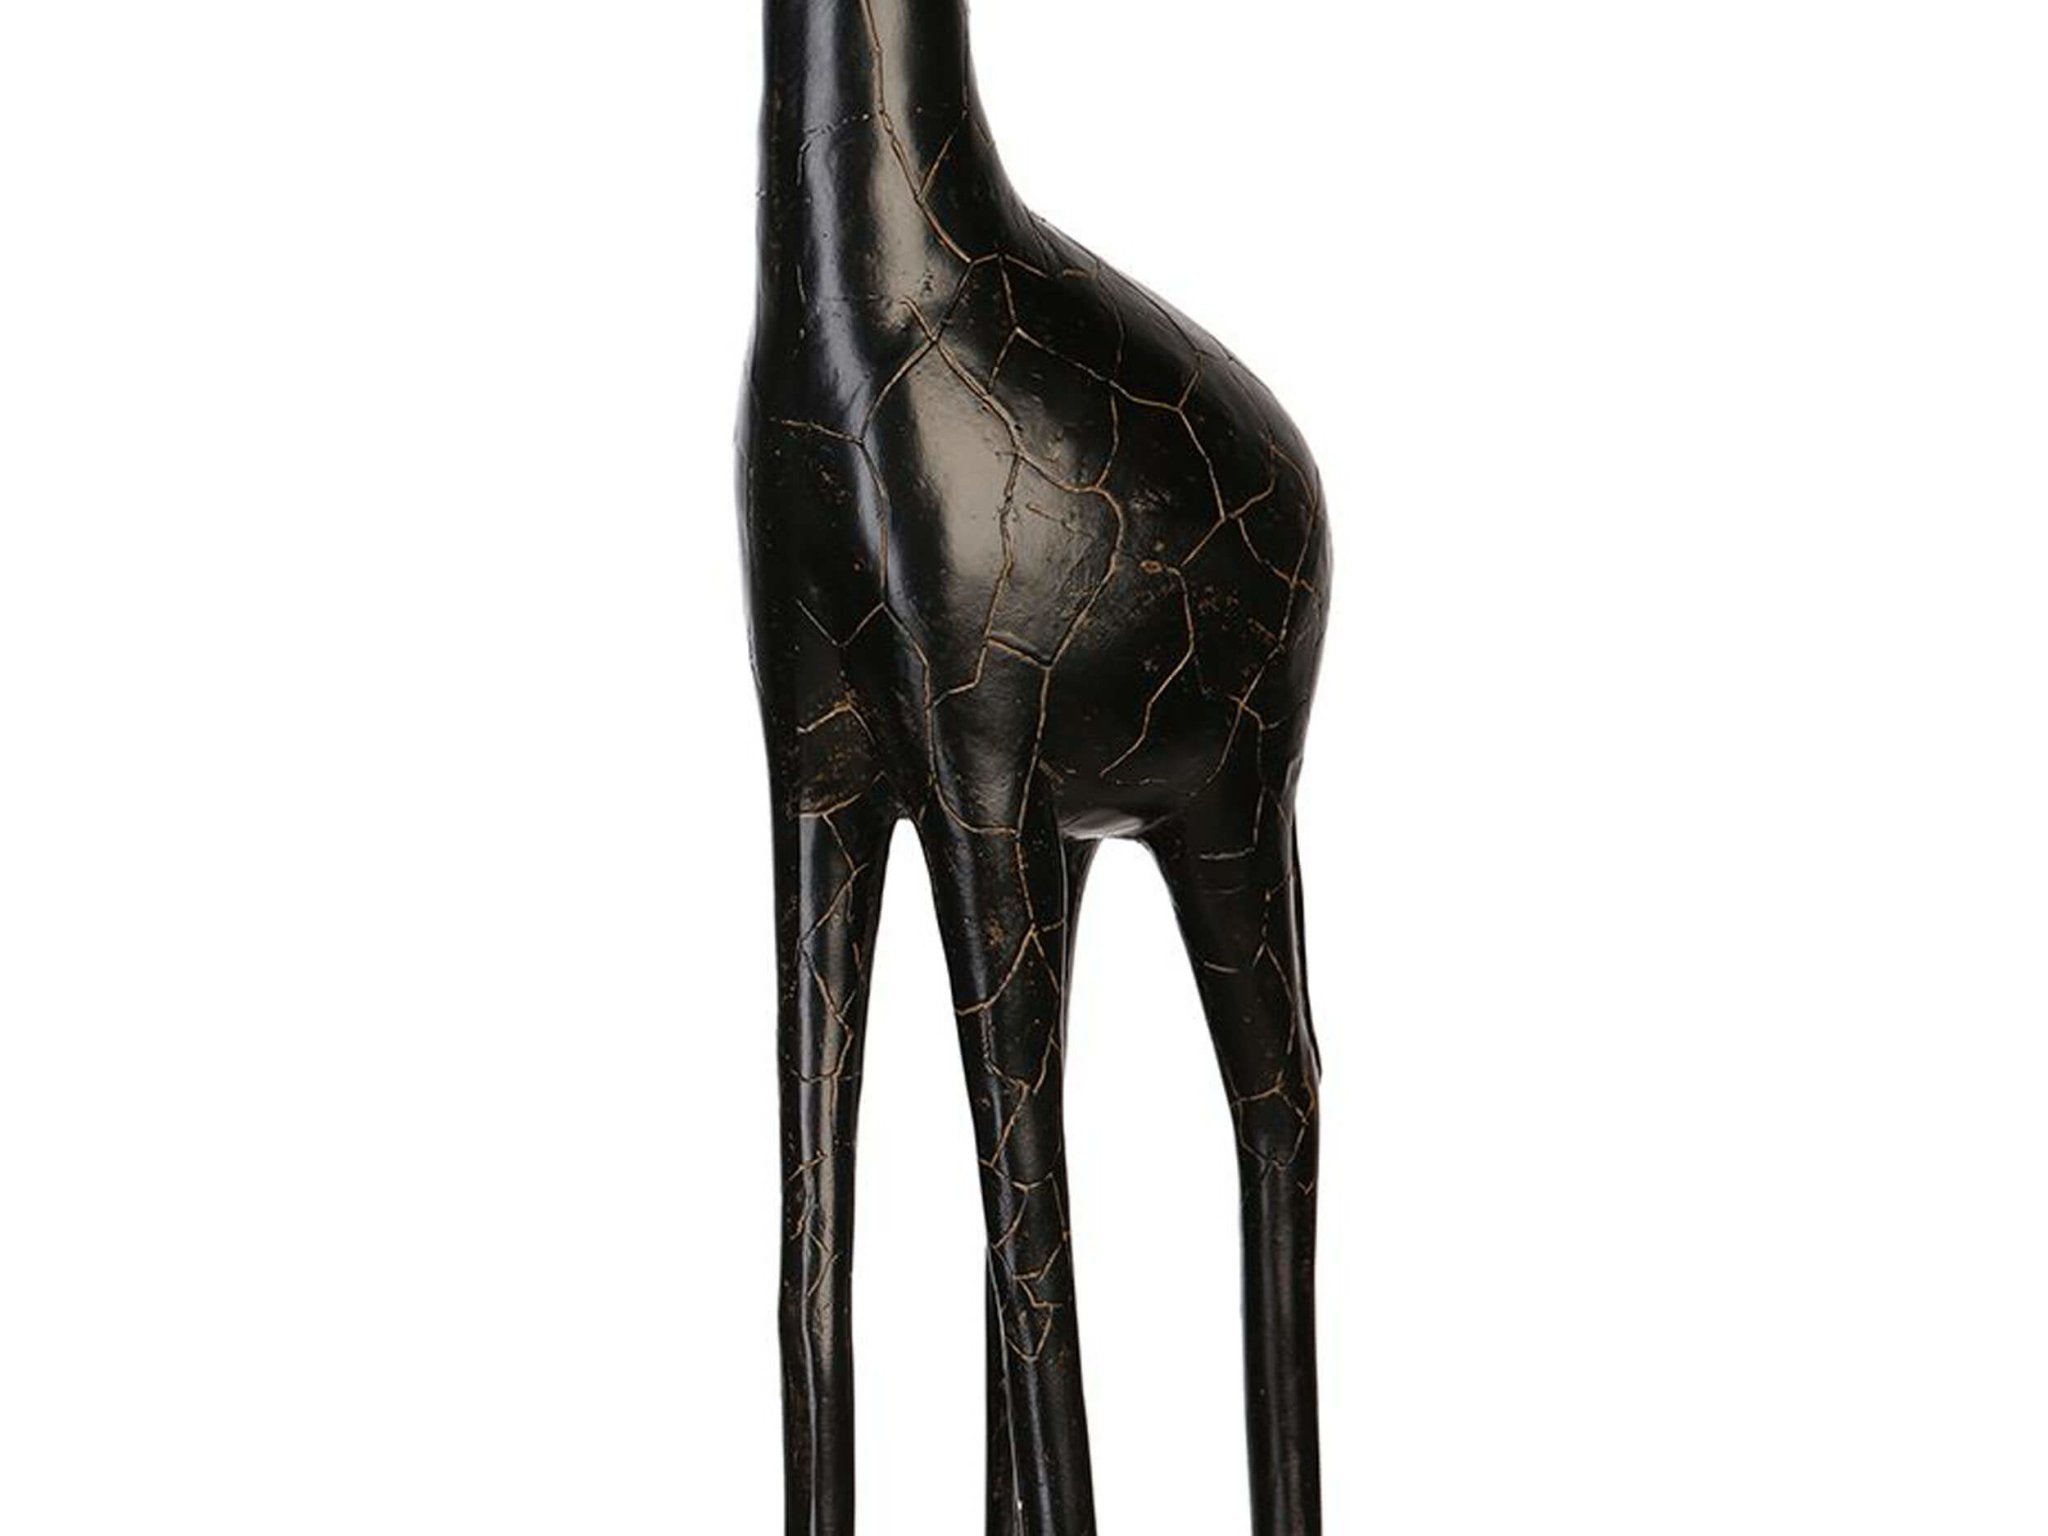 Giraffe groot sculptuur zwart donkerbruin